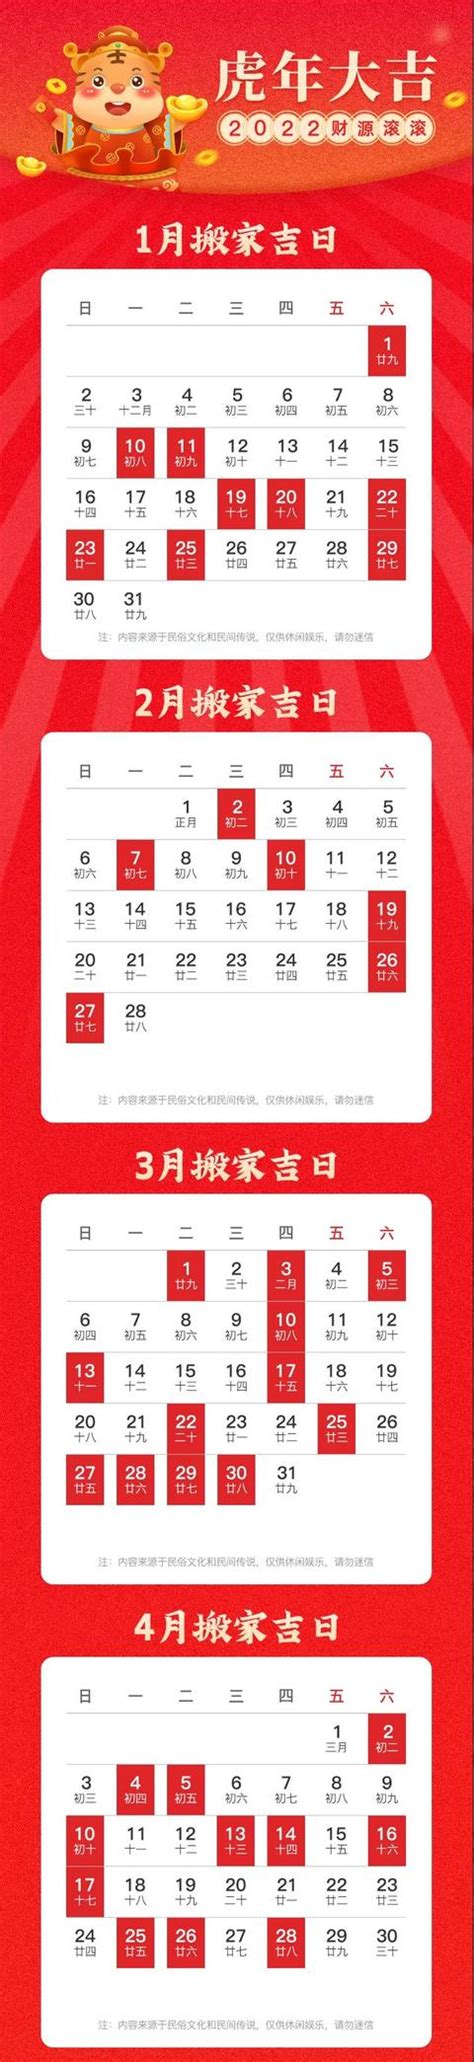 上海国展展览中心有限公司部分展会项目2022-2024年度主场搭建服务商招标公告 - CHINA AID